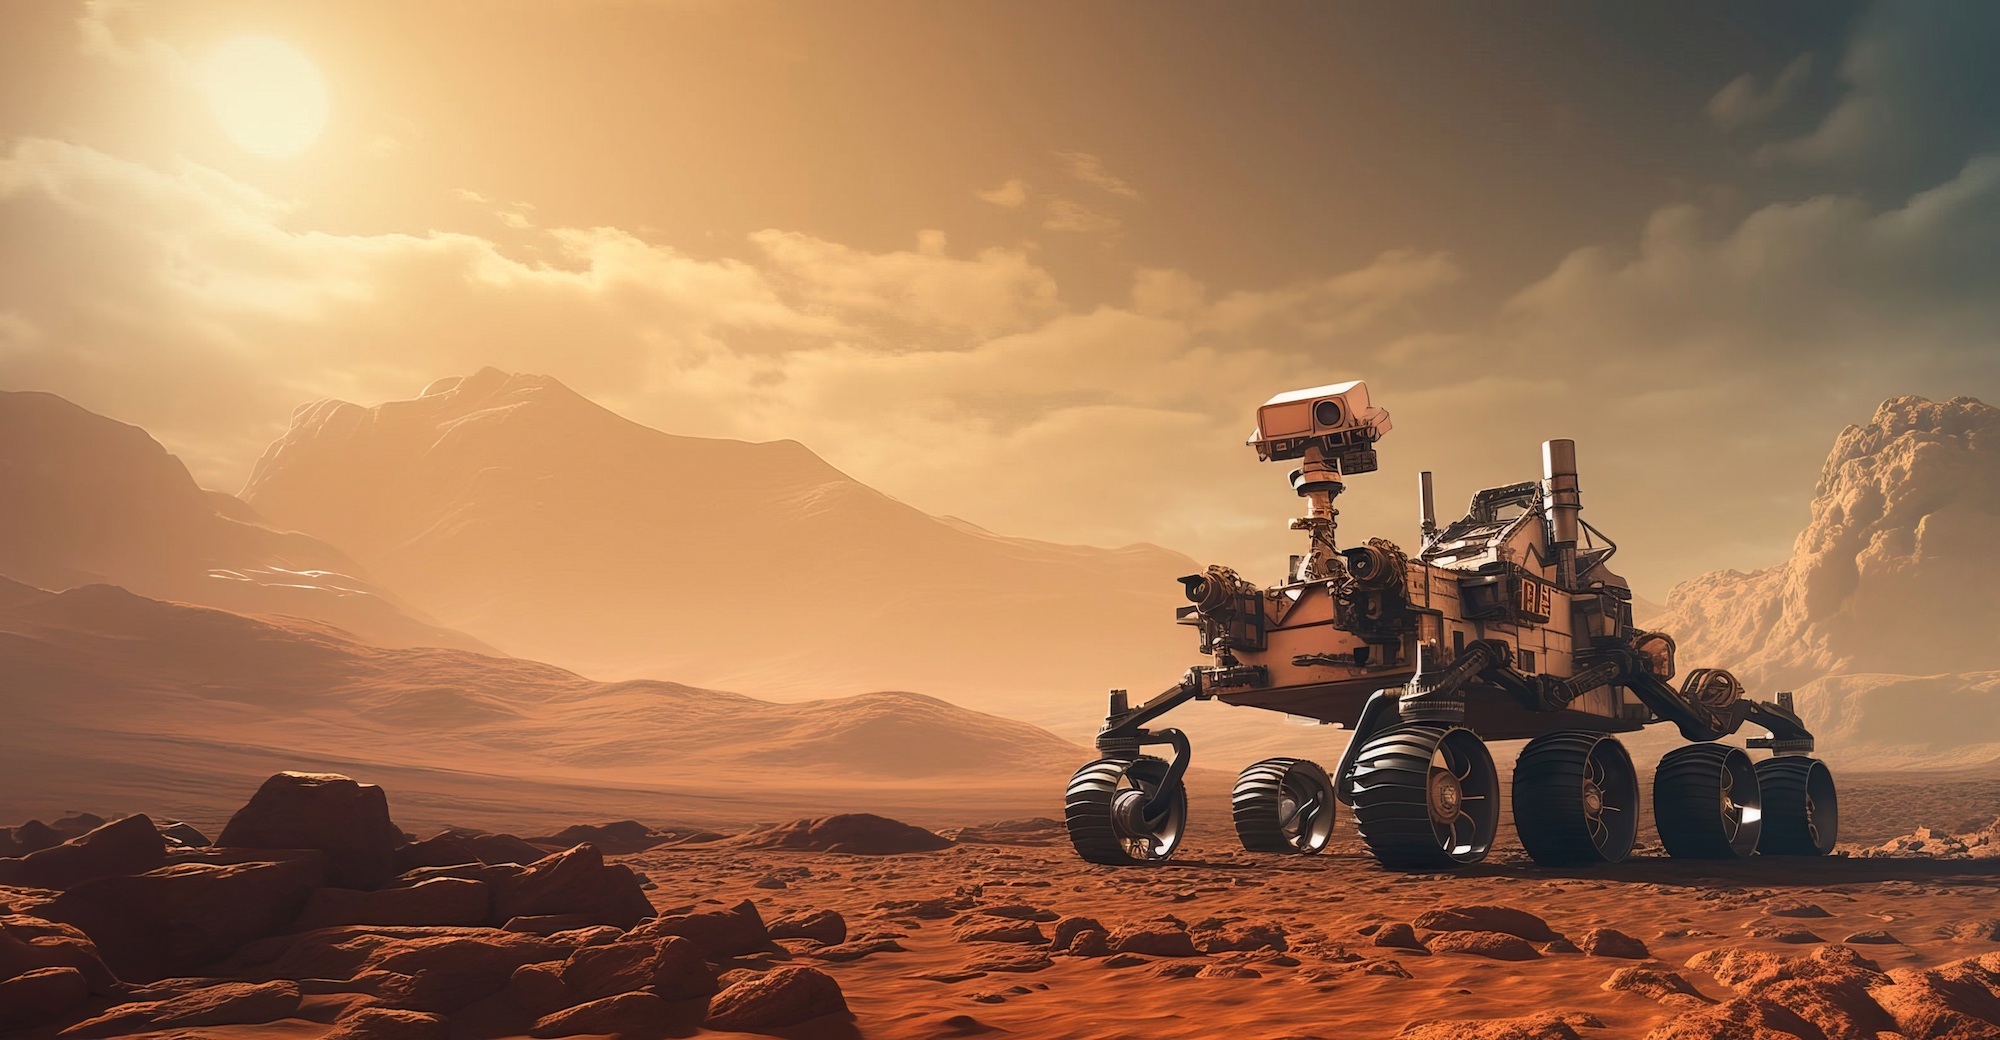 Perseverance à la surface de Mars. Imagée générée à l'aide d'une IA. © Viktor, Adobe Stock